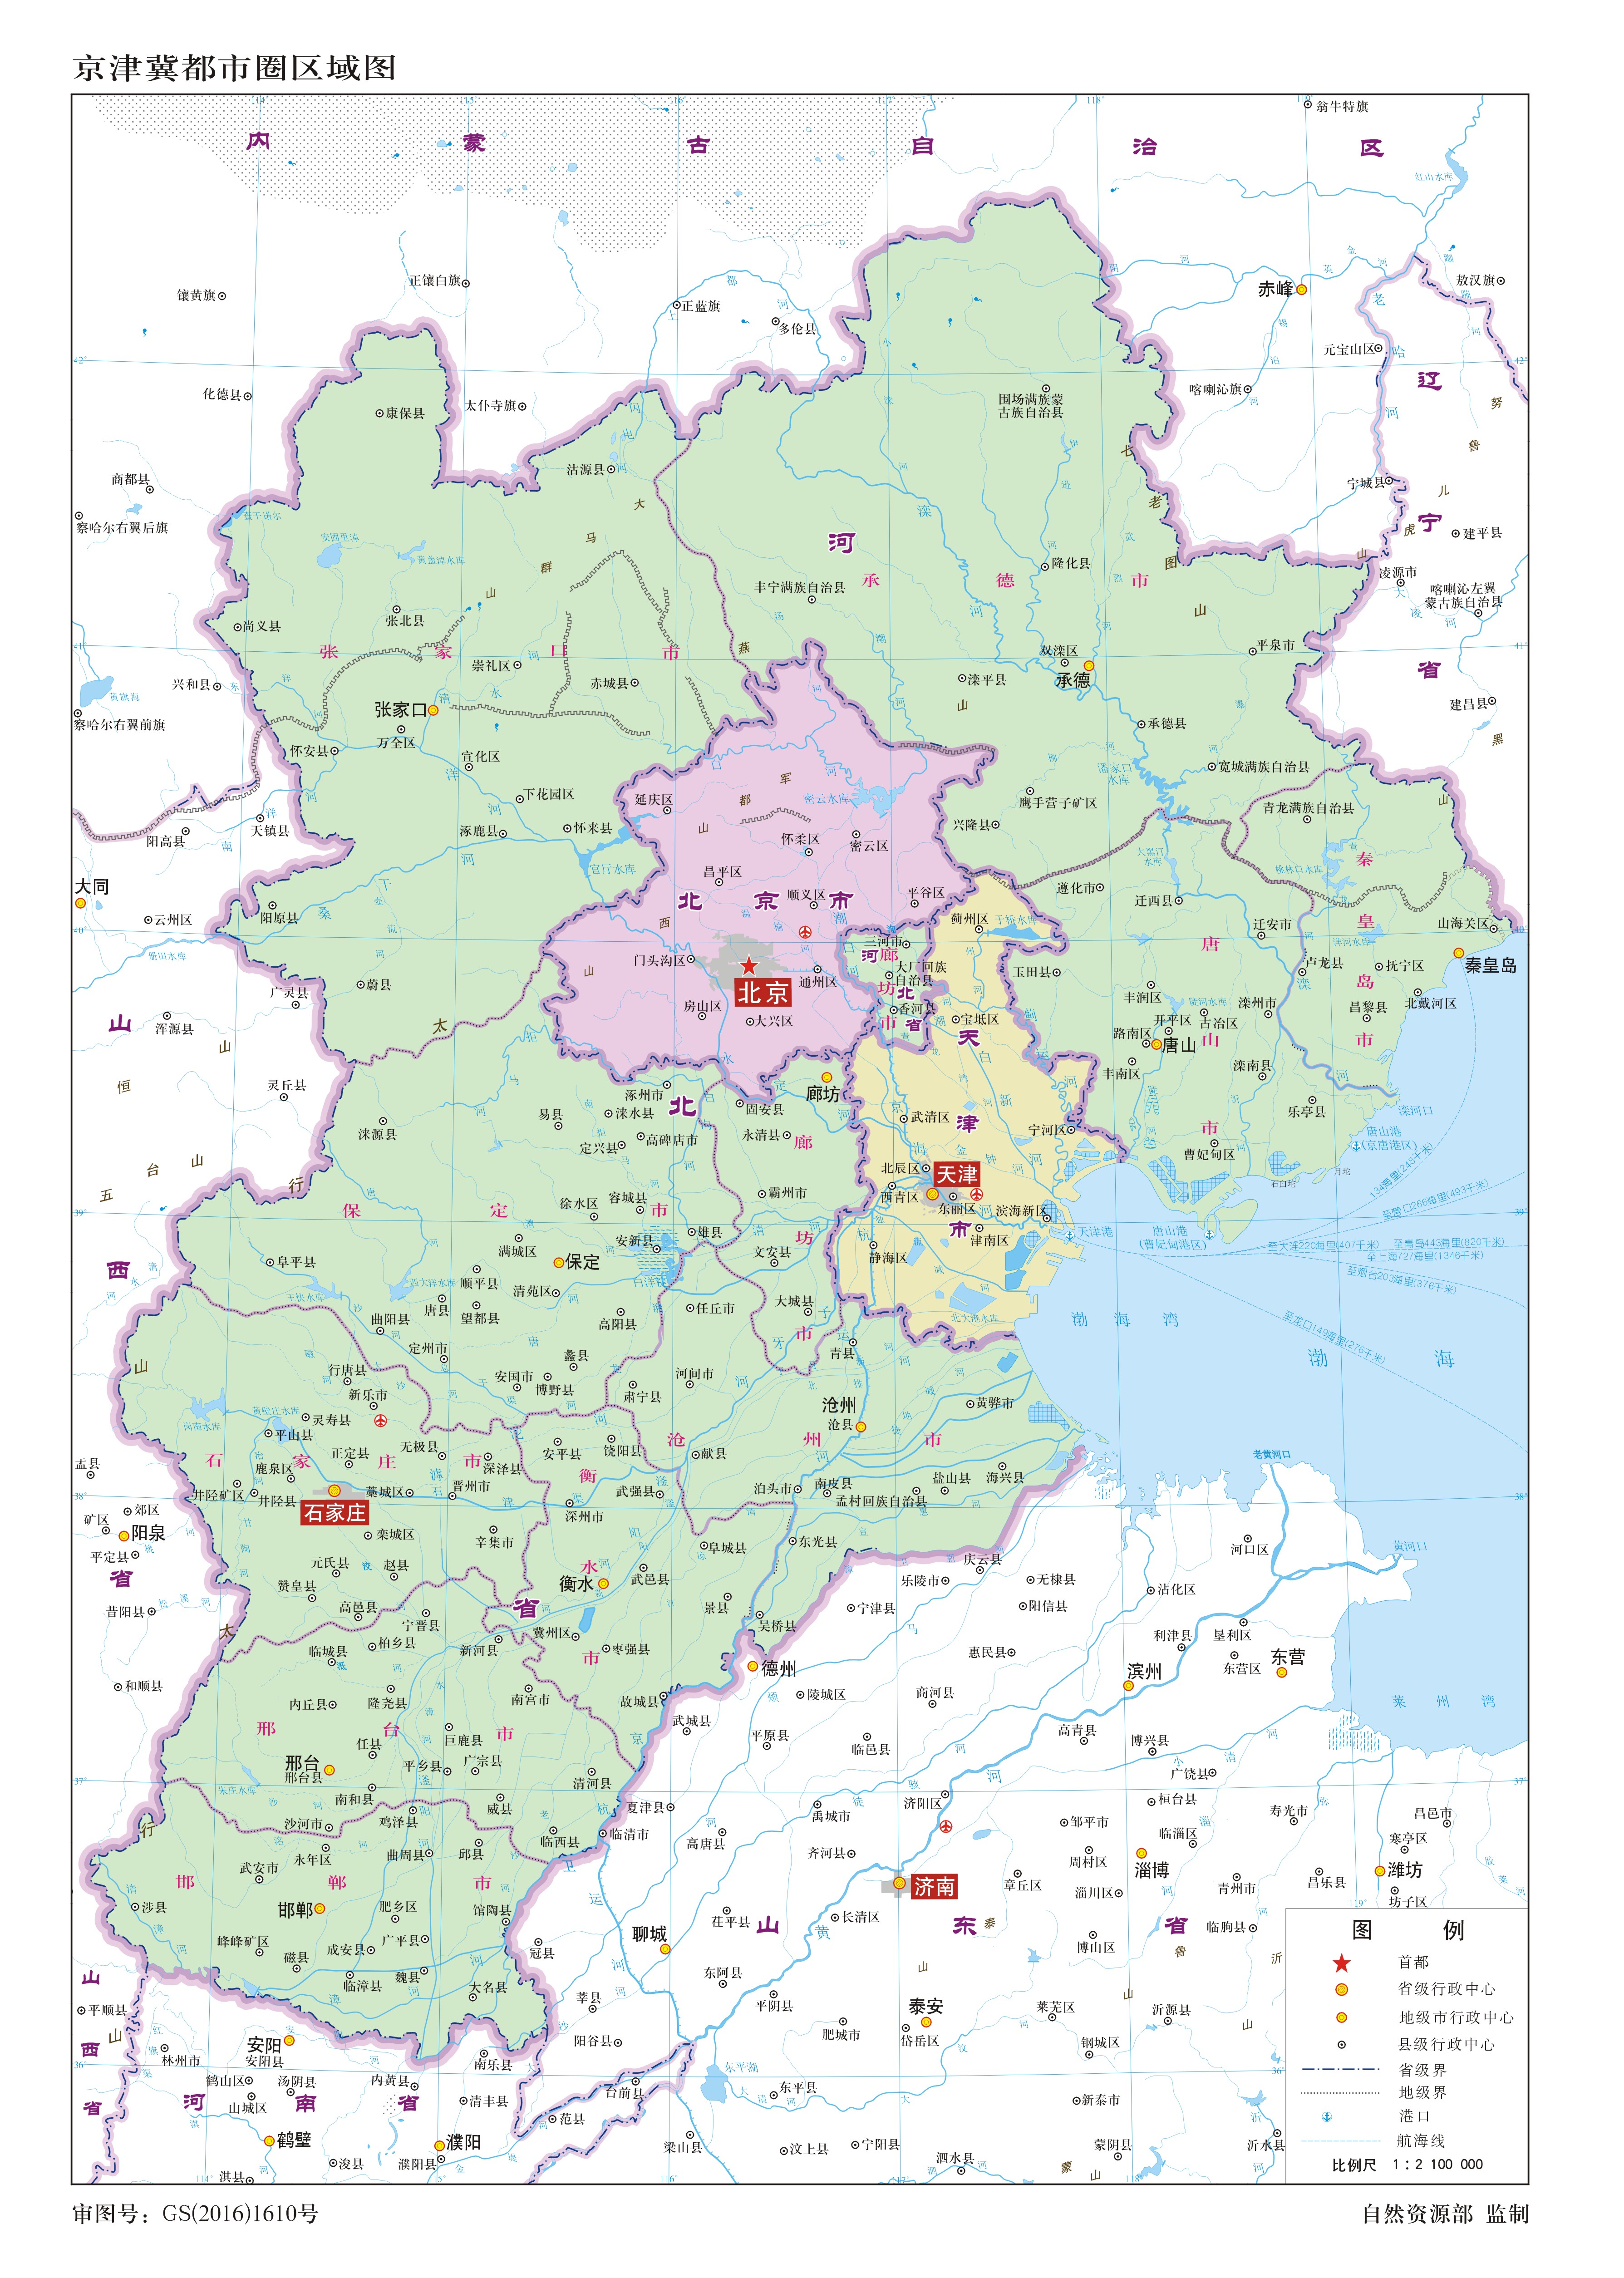 京津冀区域划分规划图